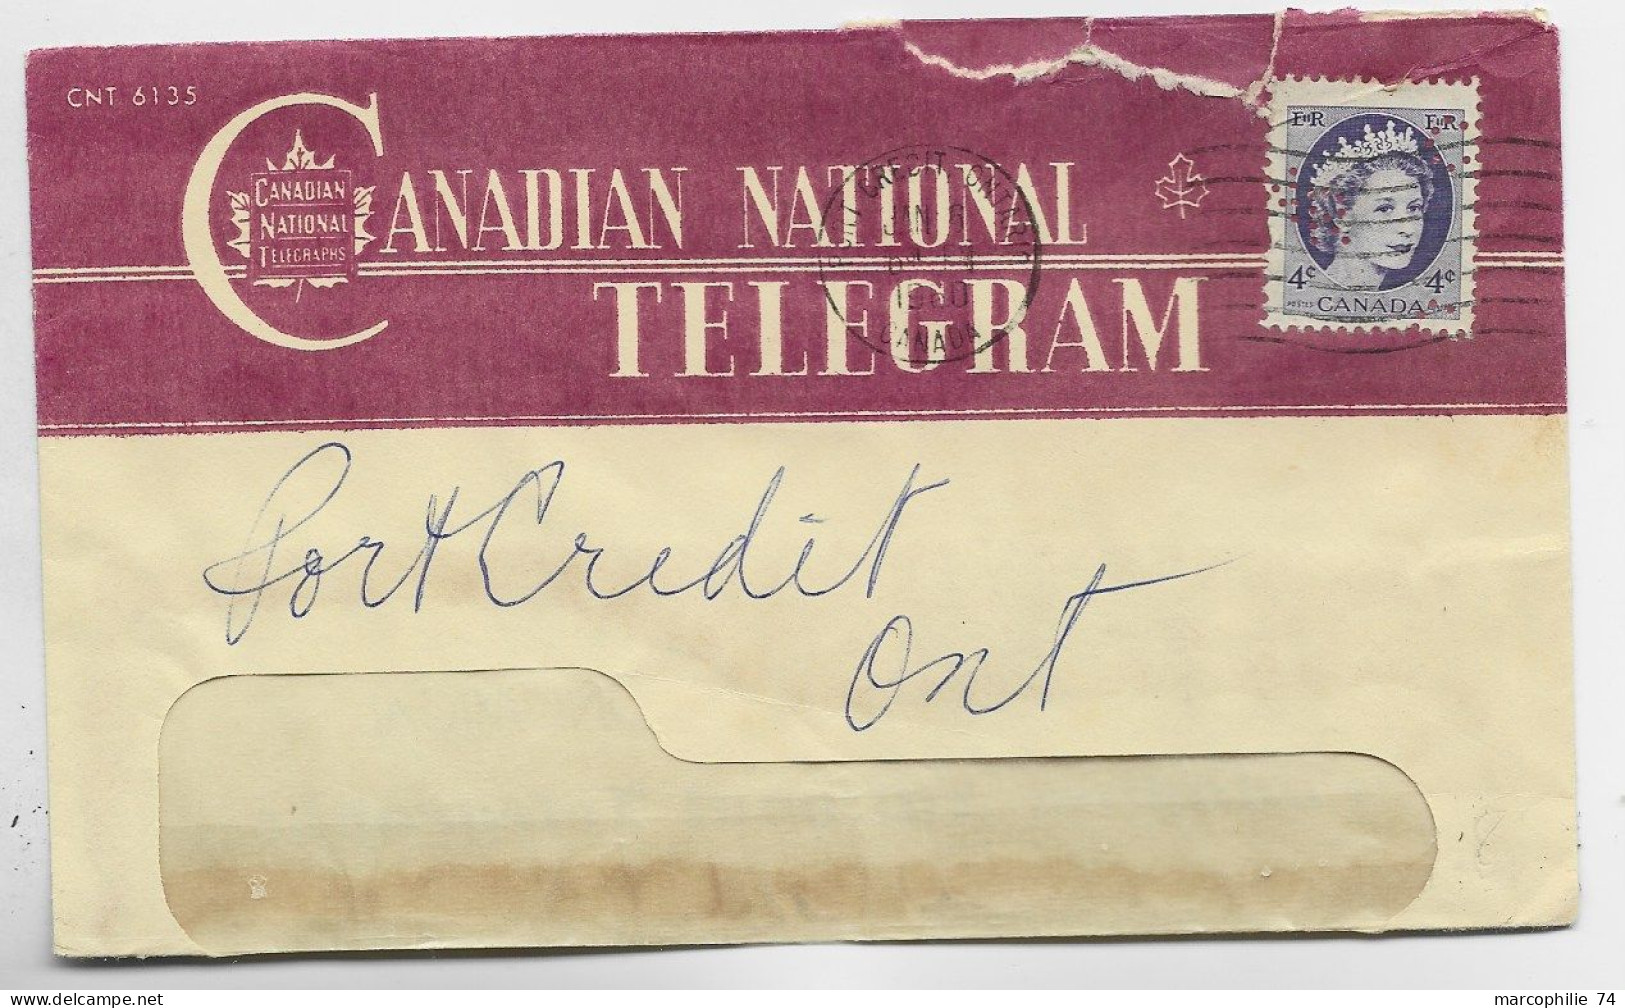 CANADA 4C ELISABETH PERFORE PERFIN LETTRE COVER CANADIA NATIONAL TELEGRAM CRECIT ONTARIO 1960 - Perforadas